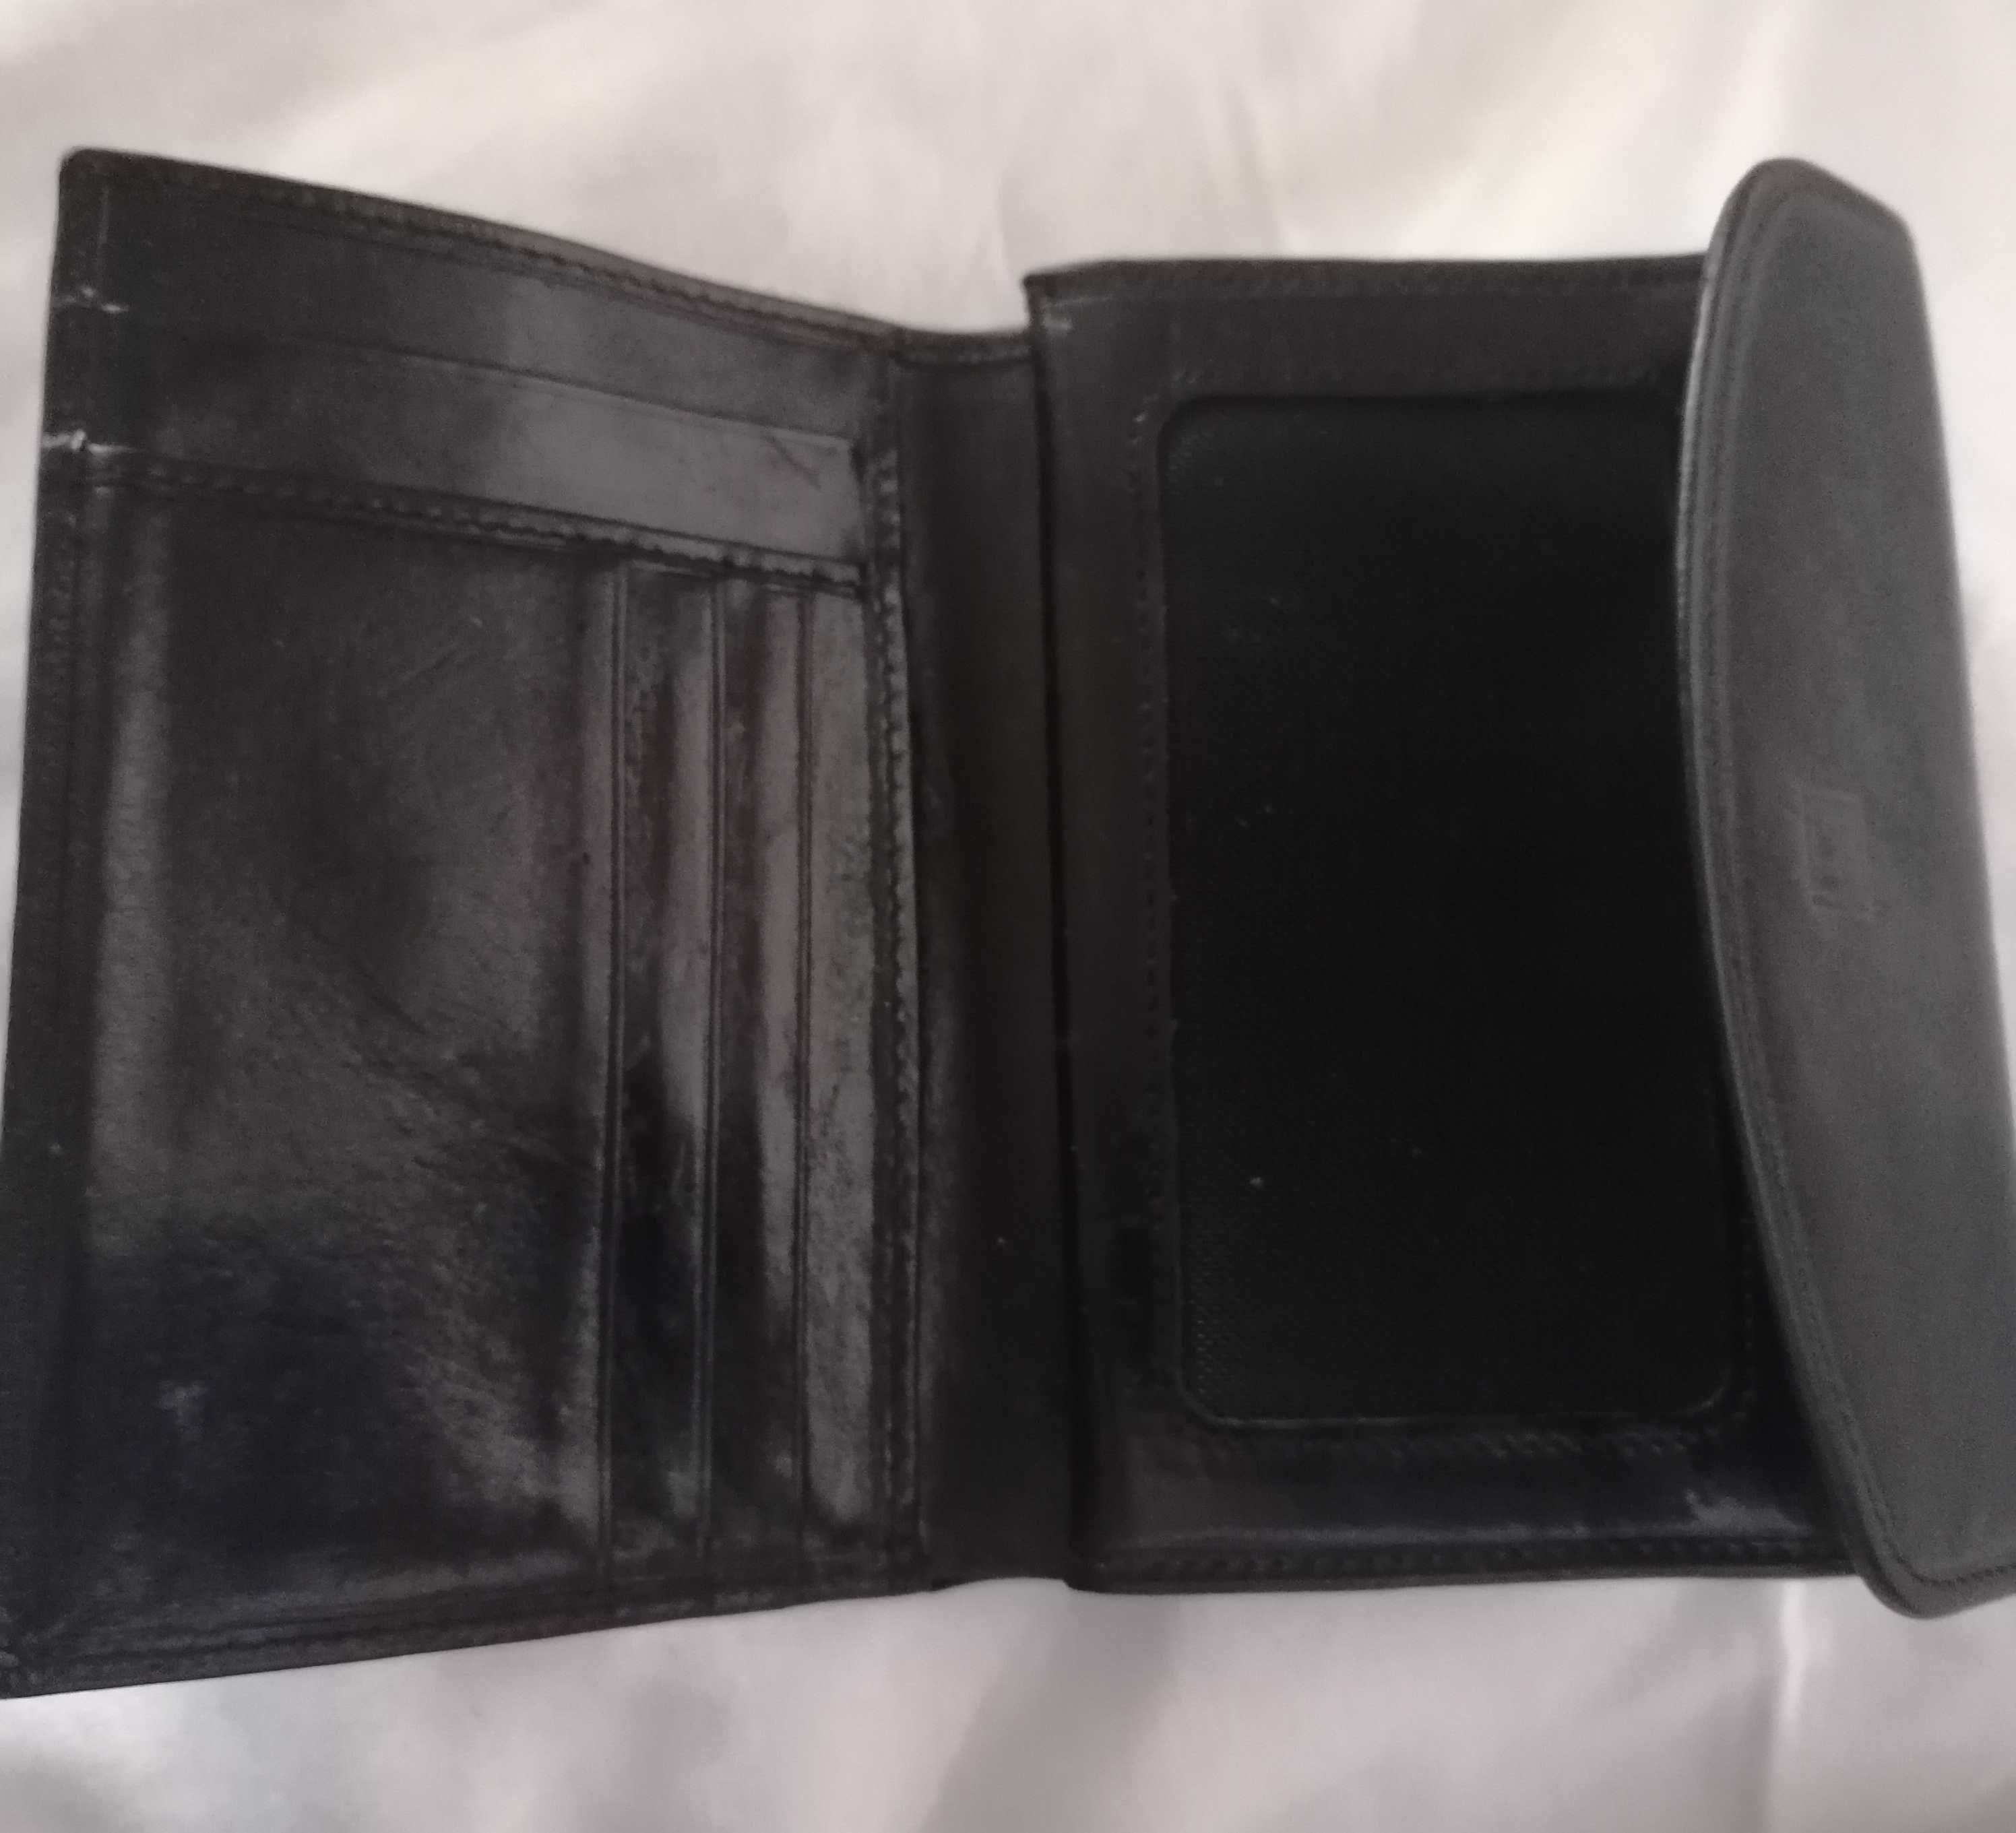 Nowy kompaktowy portfel ze skóry naturalnej - dobry pomysł na prezent